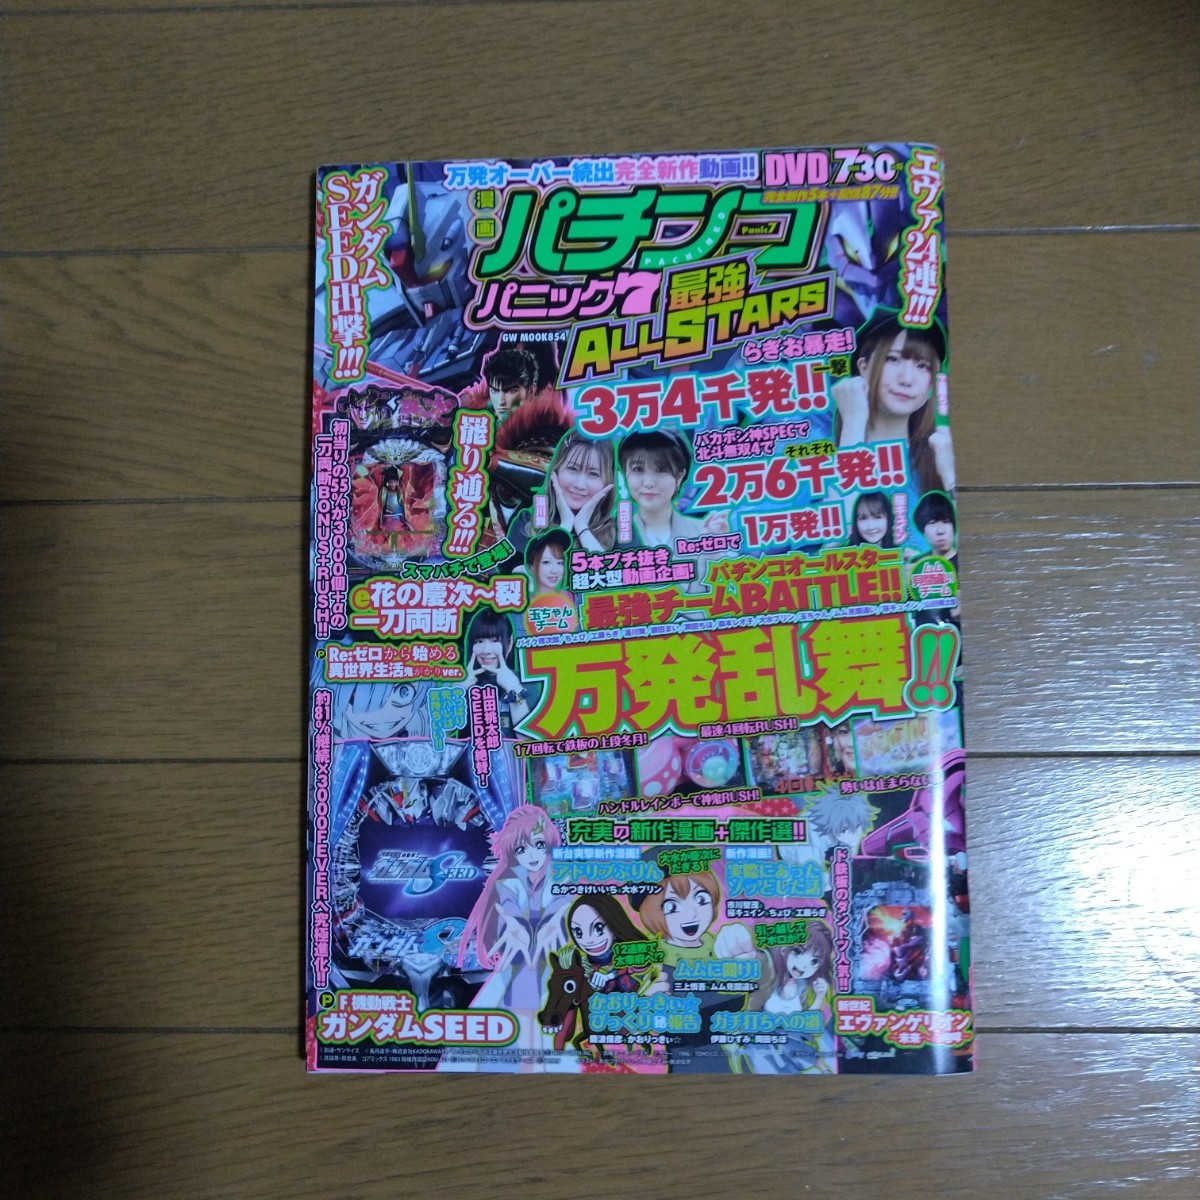 漫画パチンコパニック7 最強ALL STARS DVD付き ガイドワークス